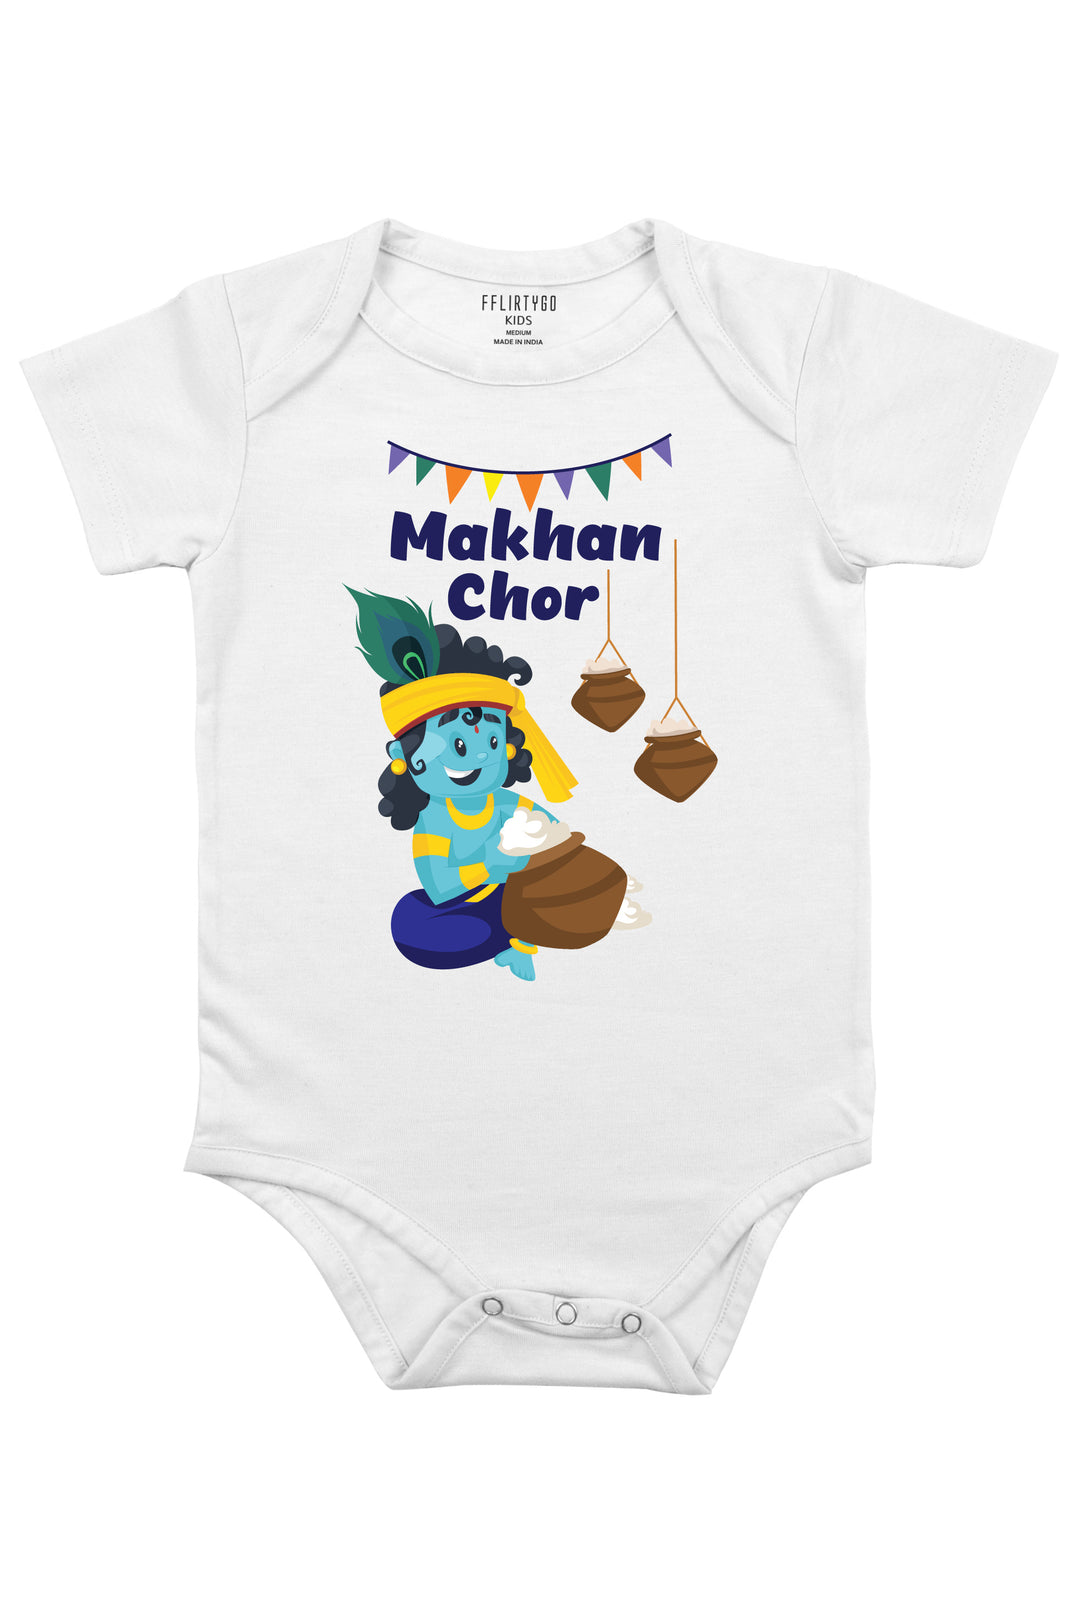 Makhan chor Baby Romper | Onesies